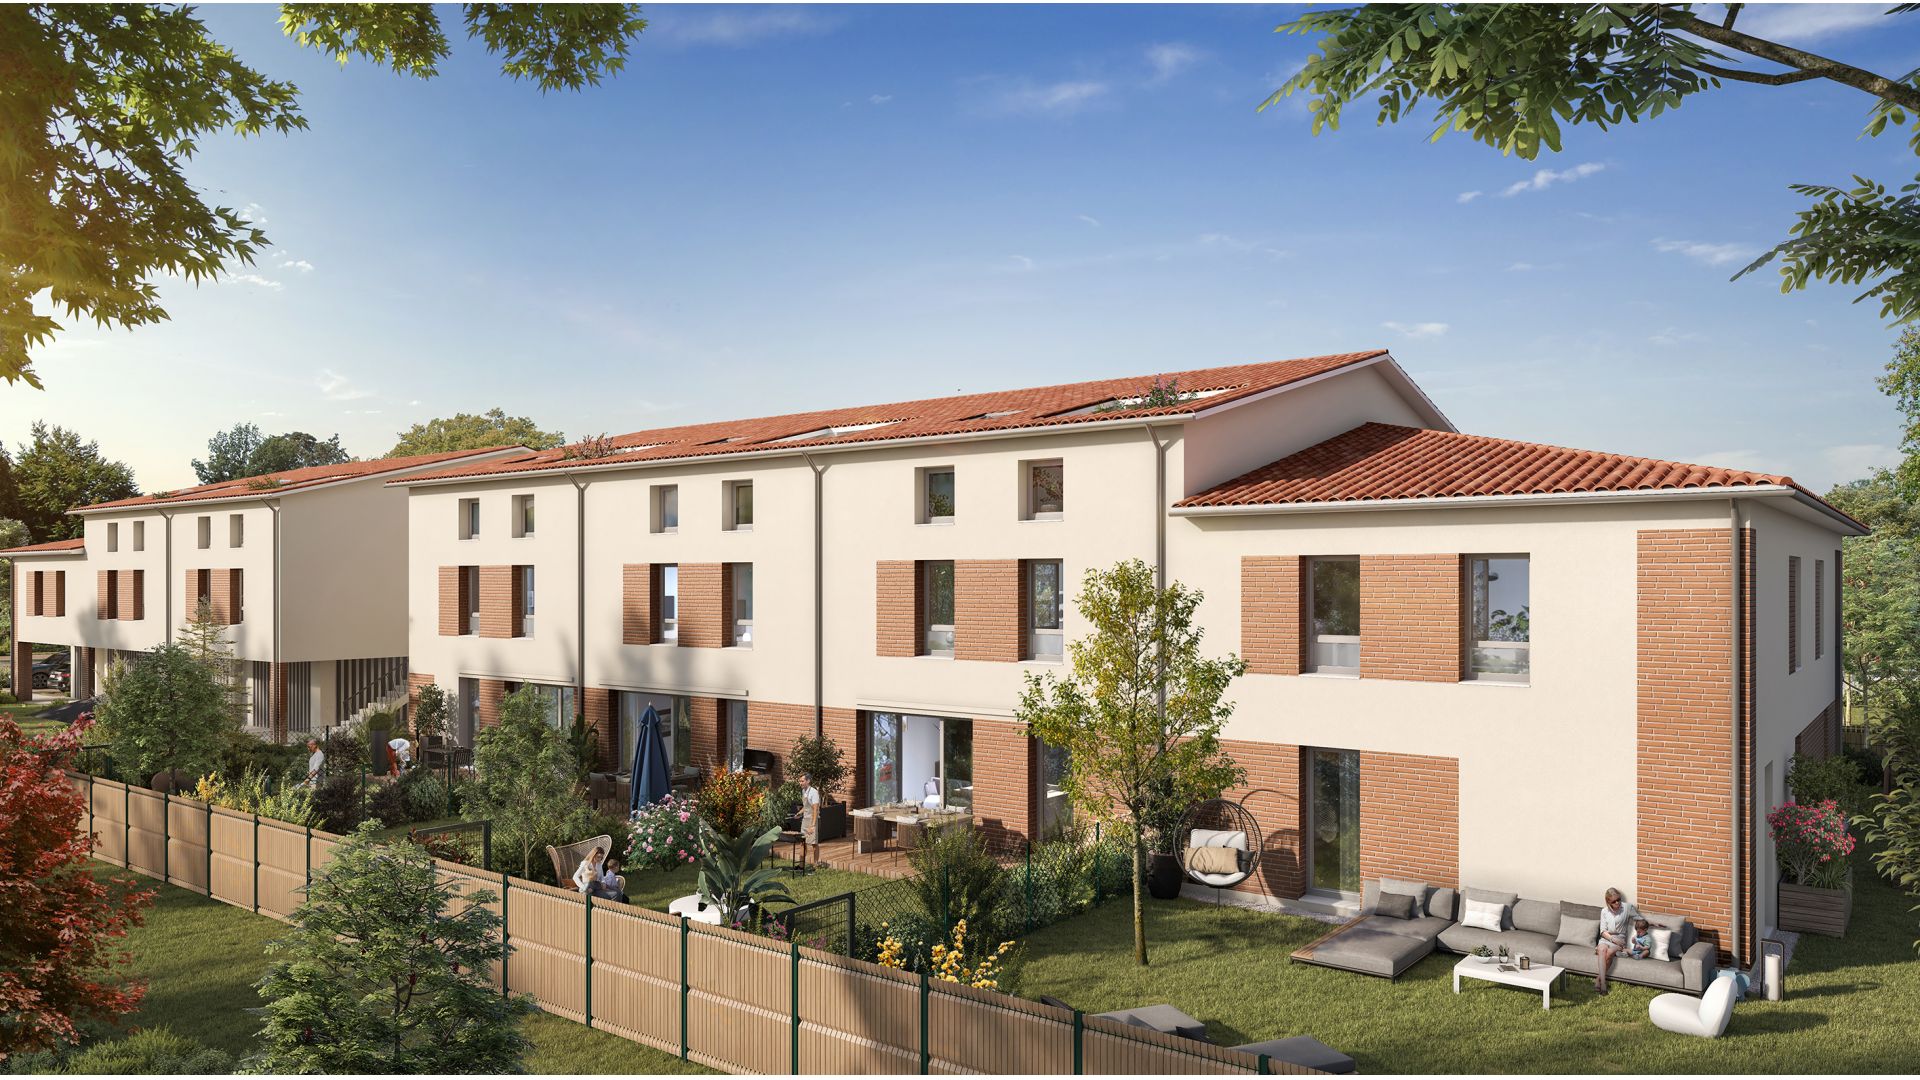 Greencity immobilier - achat appartements neufs du T2 au T4 - Résidence Le Sénéchal - 31240 Saint-Jean